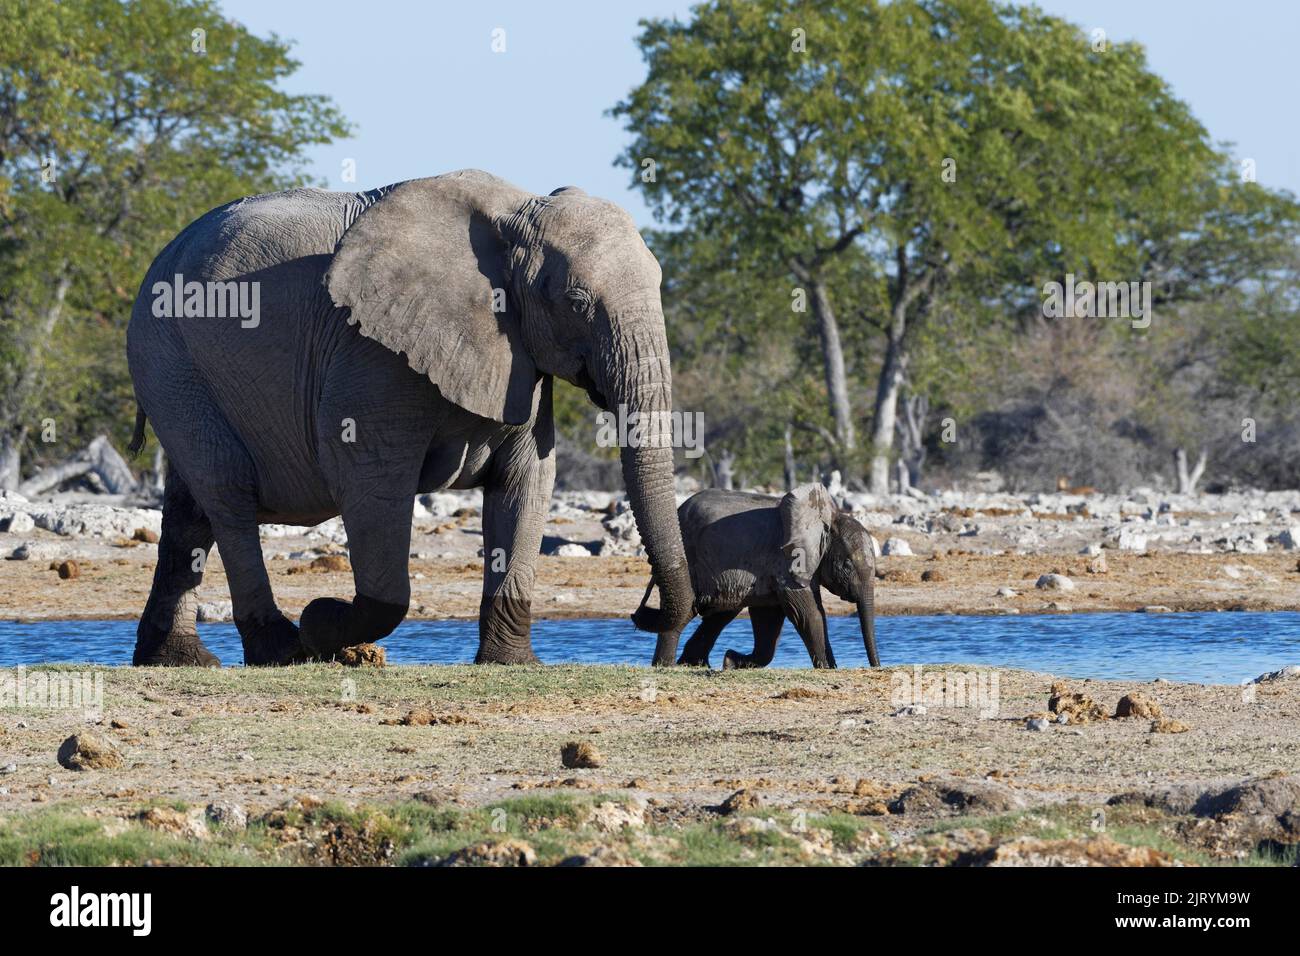 Afrikanische Buschelefanten (Loxodonta africana), Mutter mit Elefantenbaby beim Spaziergang entlang des Wasserlochs, Etosha National Park, Namibia, Afrika Stockfoto